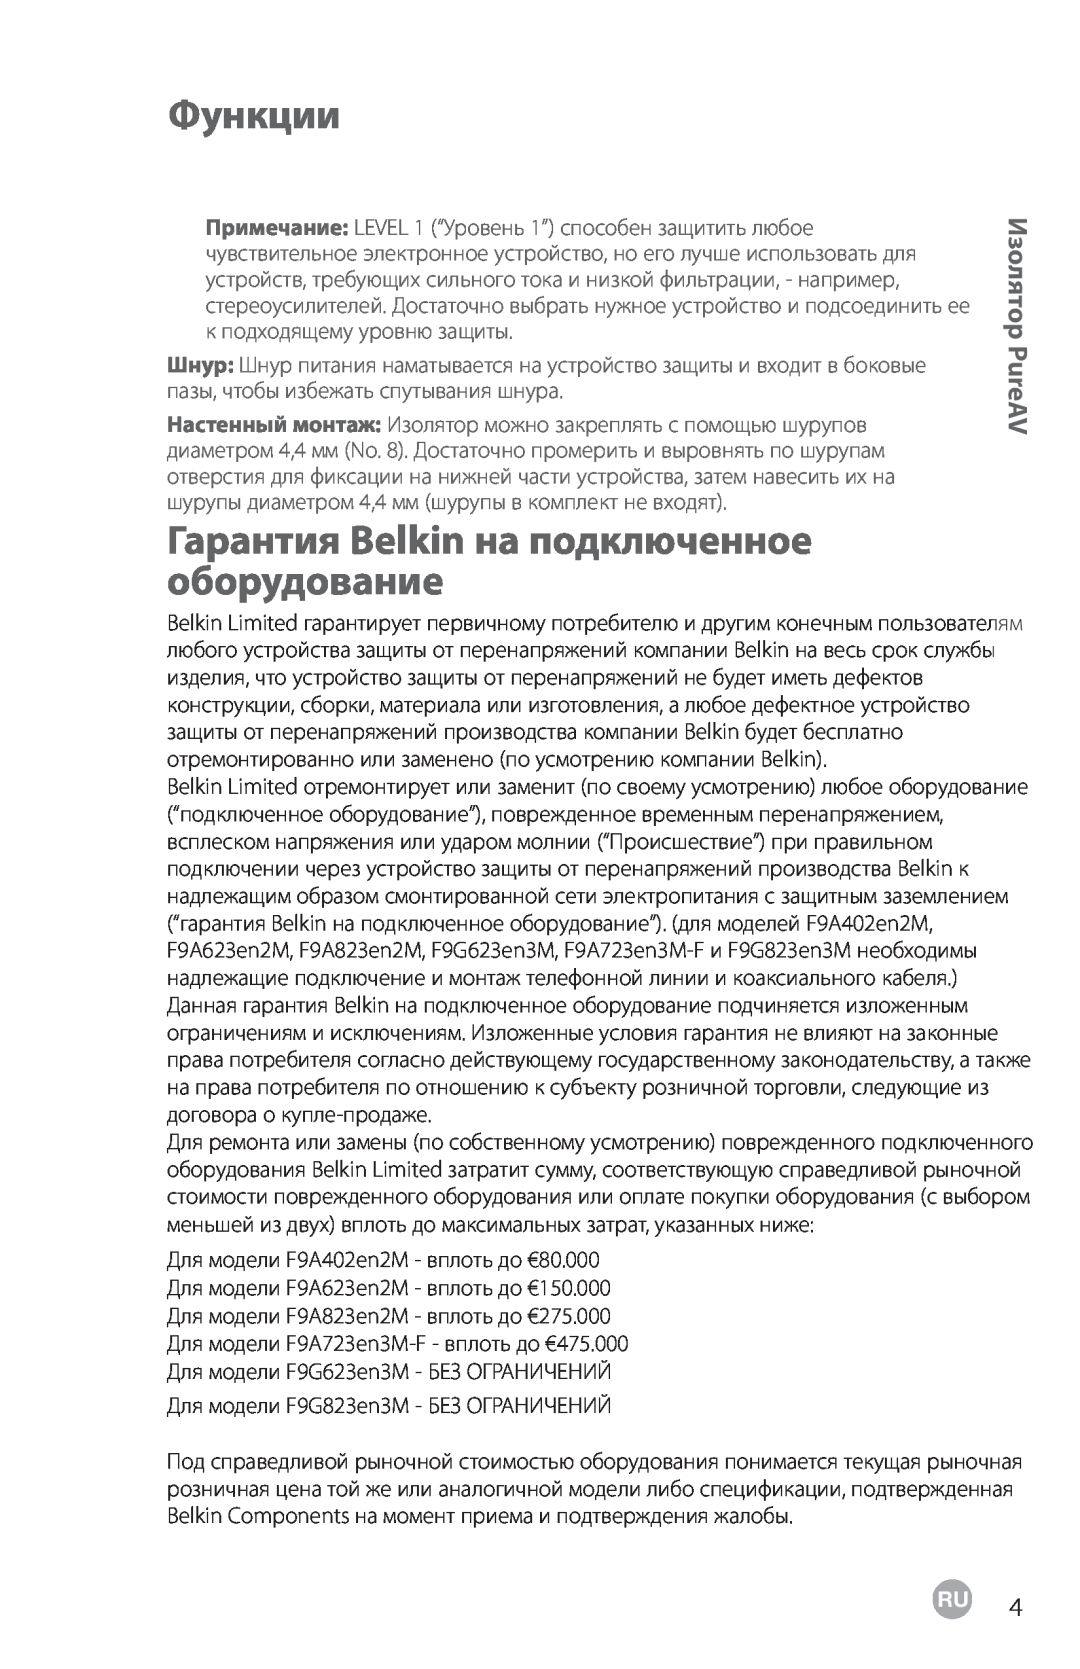 Belkin F9G823EN3M, F9G623EN3M user manual Гарантия Belkin на подключенное оборудование, Функции, Изолятор PureAV 